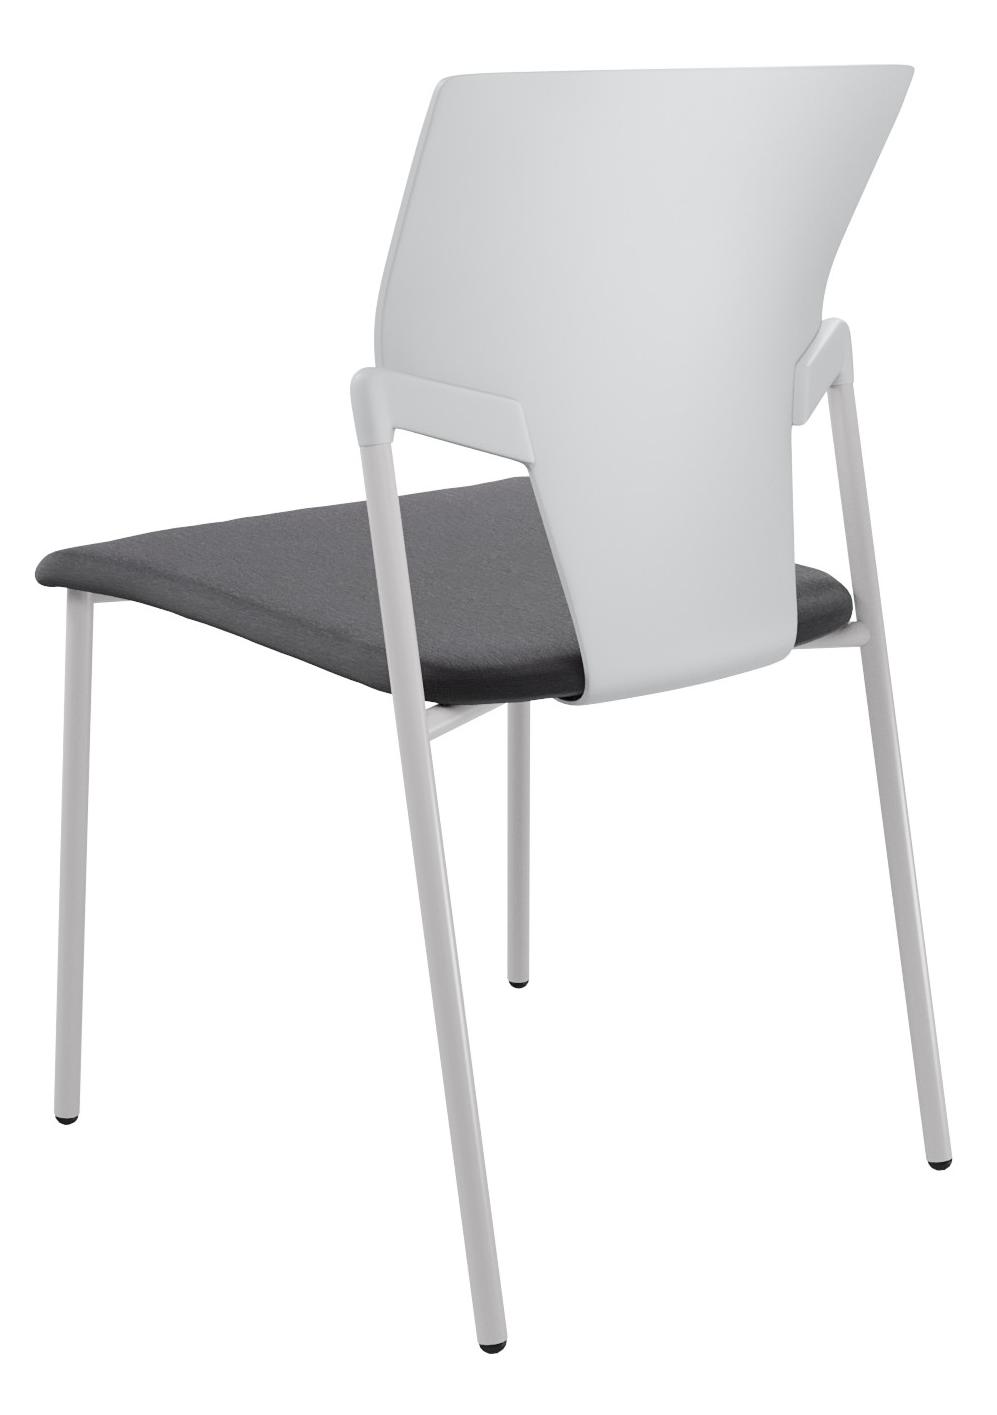 Пластиковые стулья монокок с хромированной рамой на 4 ножках арт. 